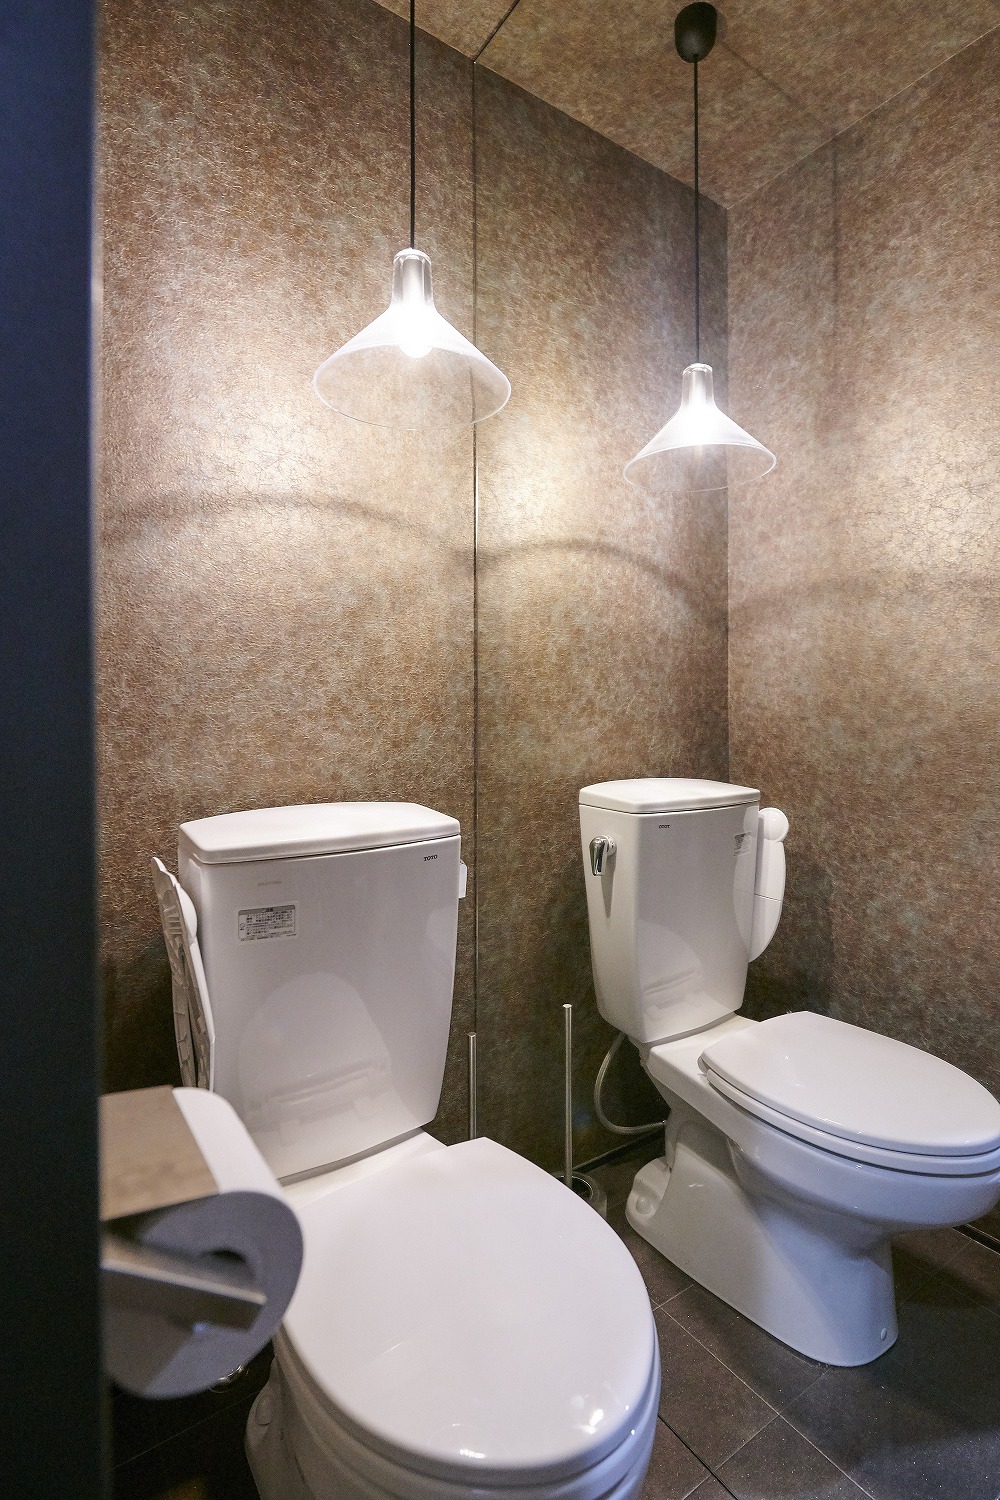 一面のミラー貼りが広さを演出する上品なトイレ空間　の画像